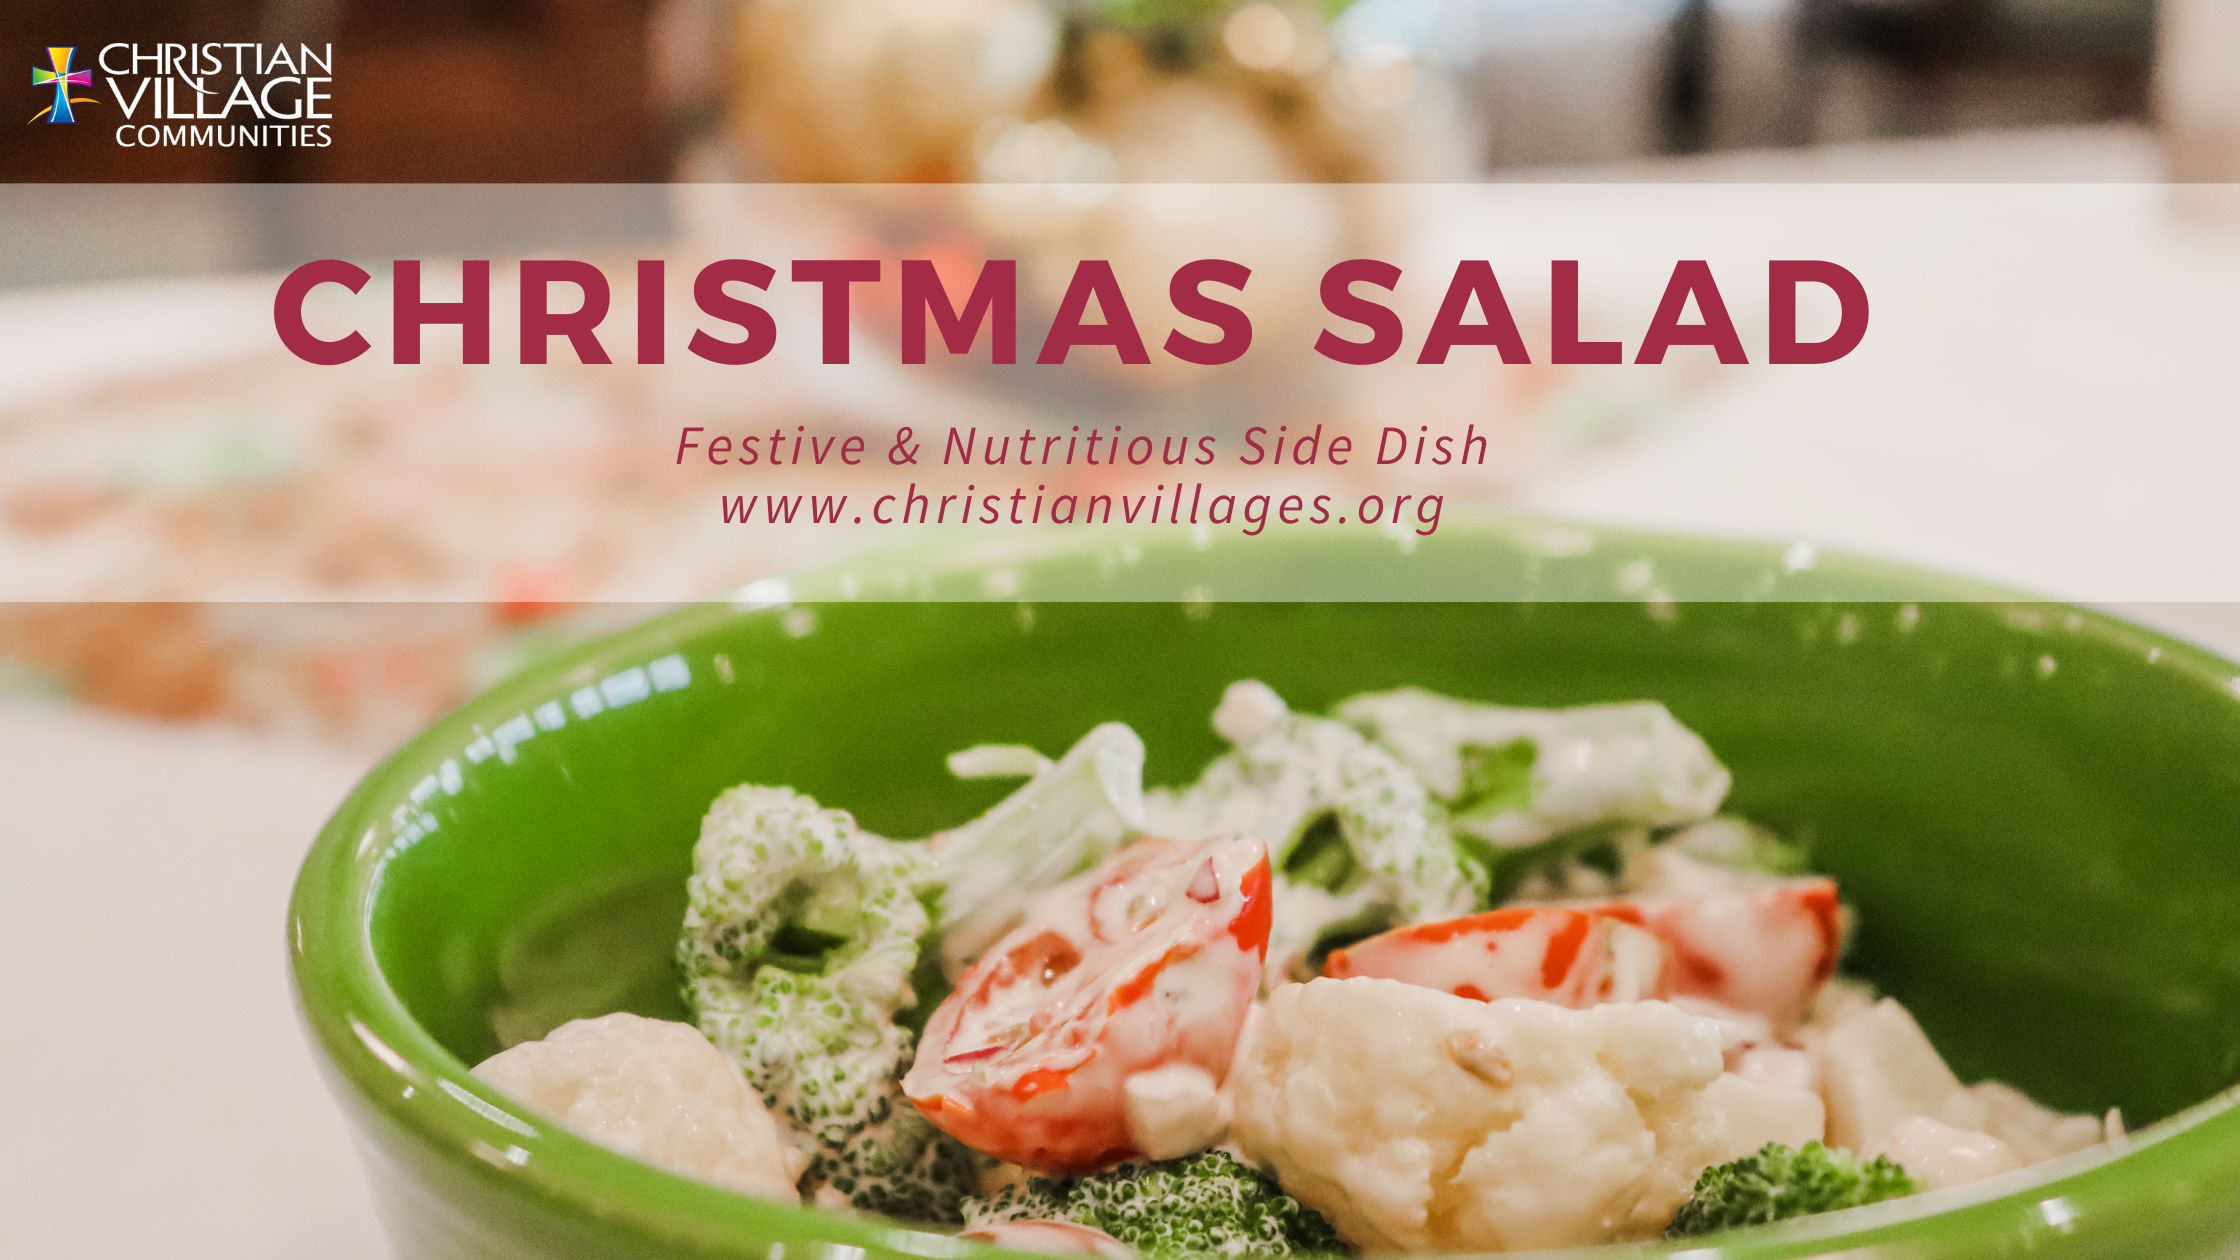 The perfect Christmas side dish - Christmas Salad!